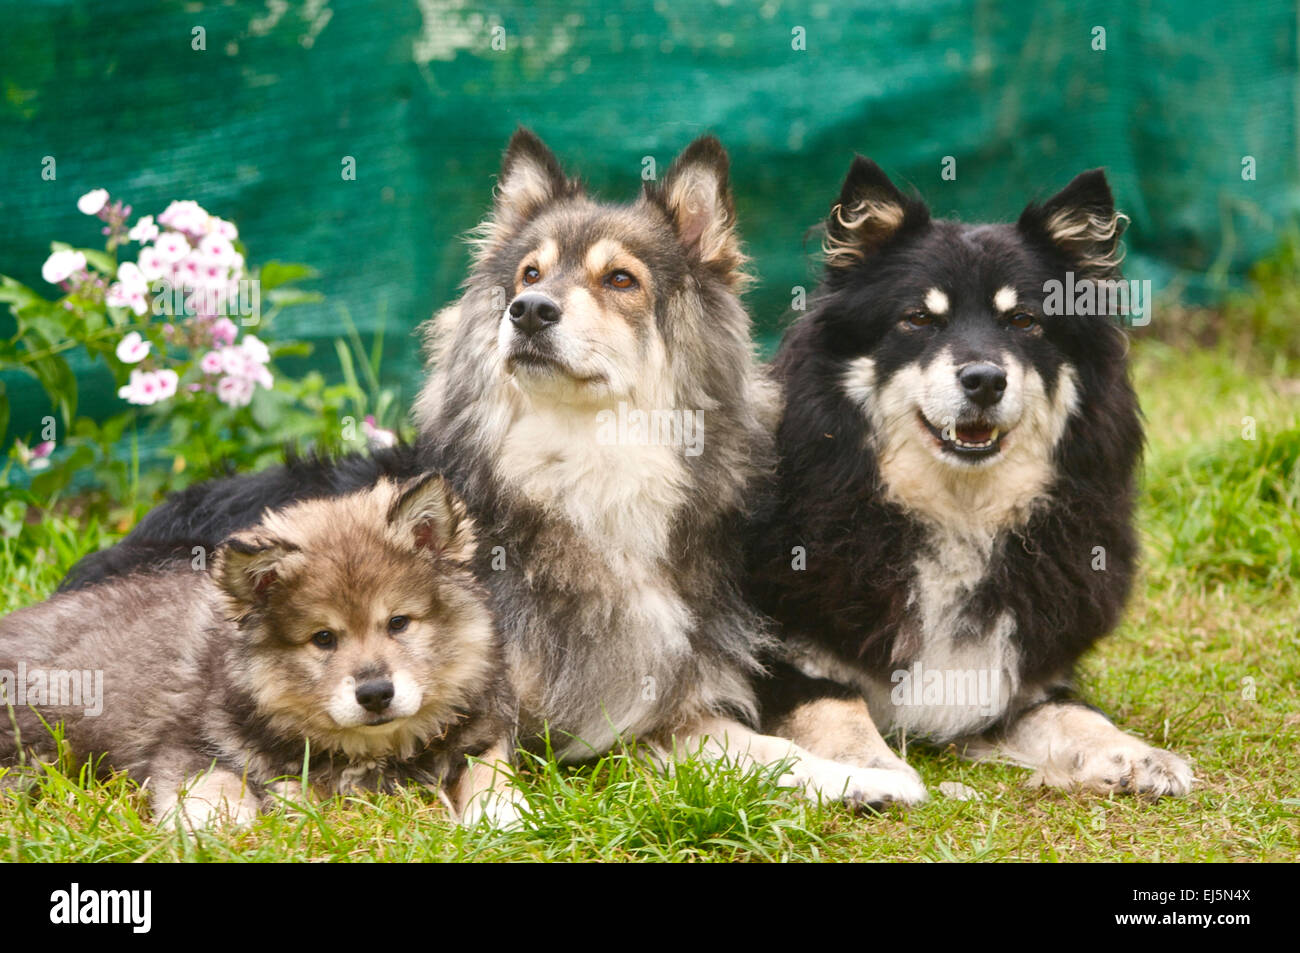 Finnish Lapphund Puppy with mum and grandma Stock Photo